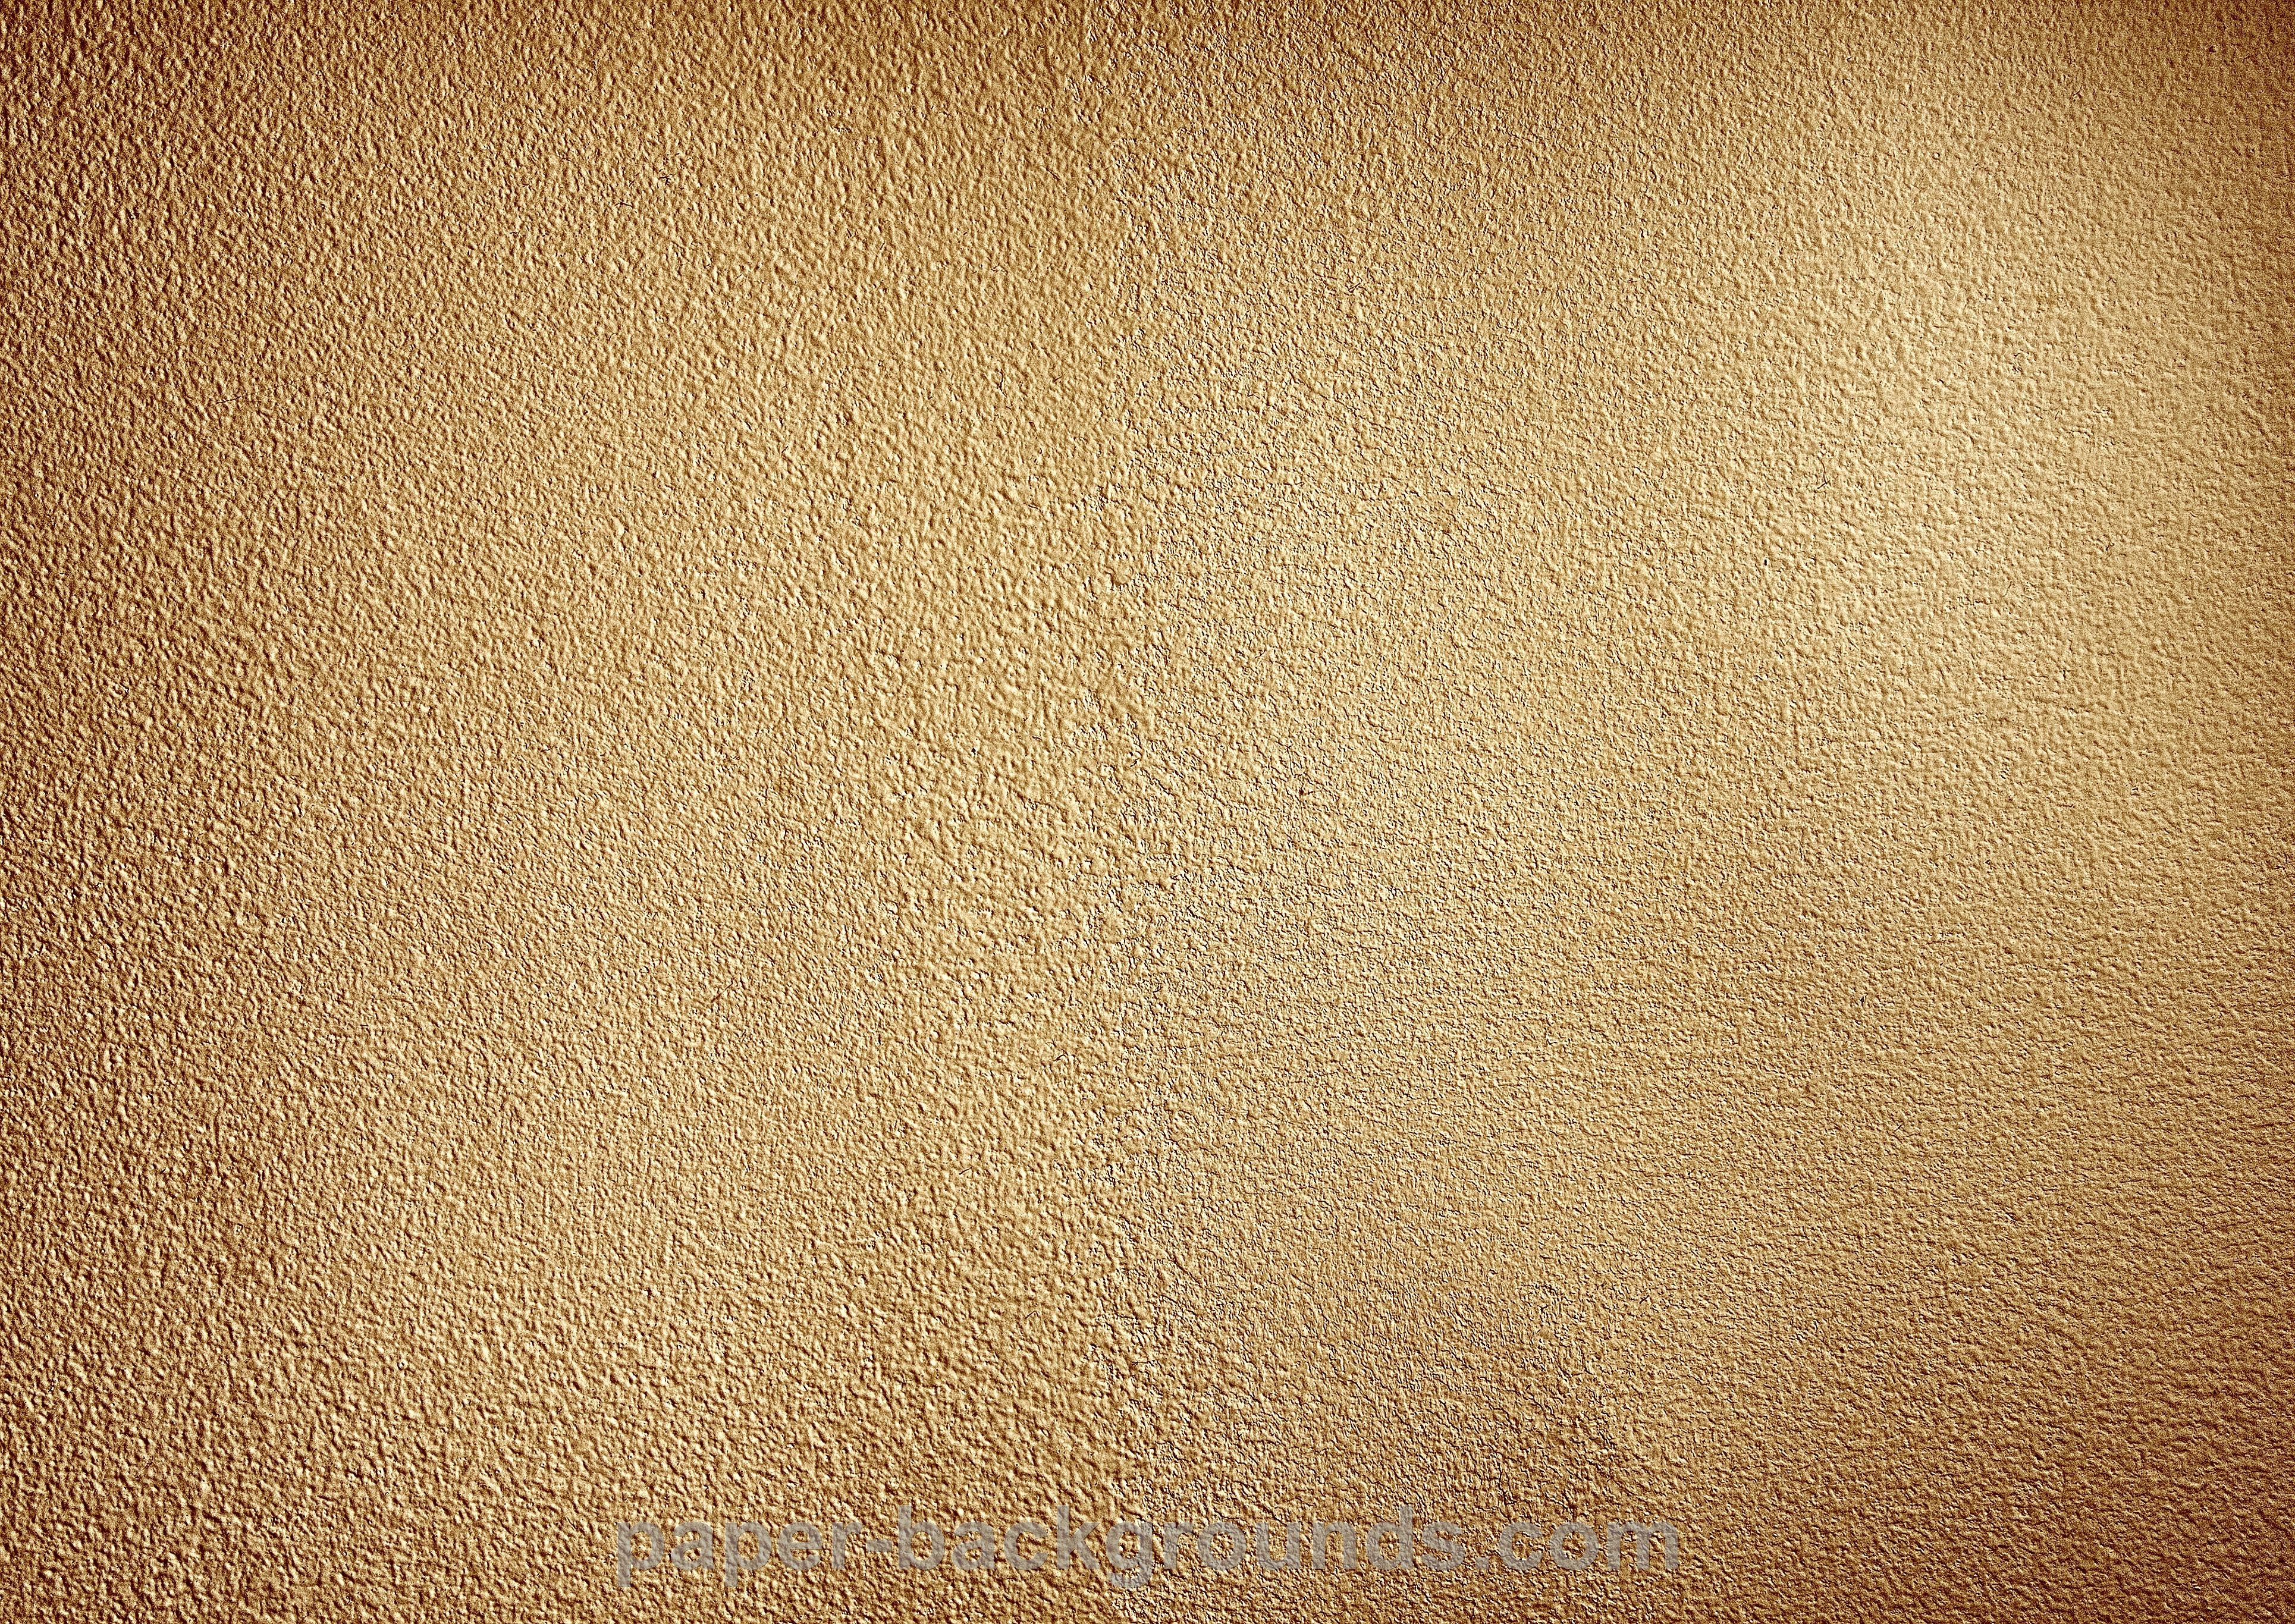 Golden Parchment Paper Texture Picture | Free Photograph | Photos ...